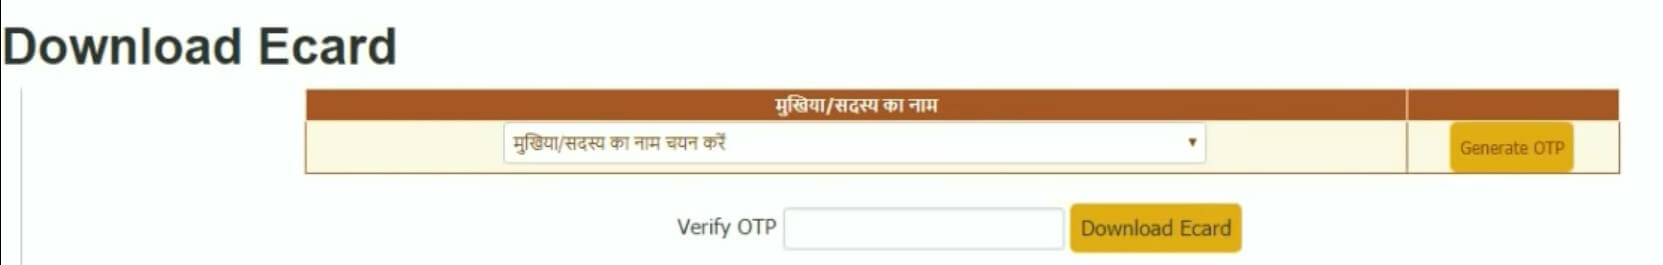 generate otp to download bhamashah card